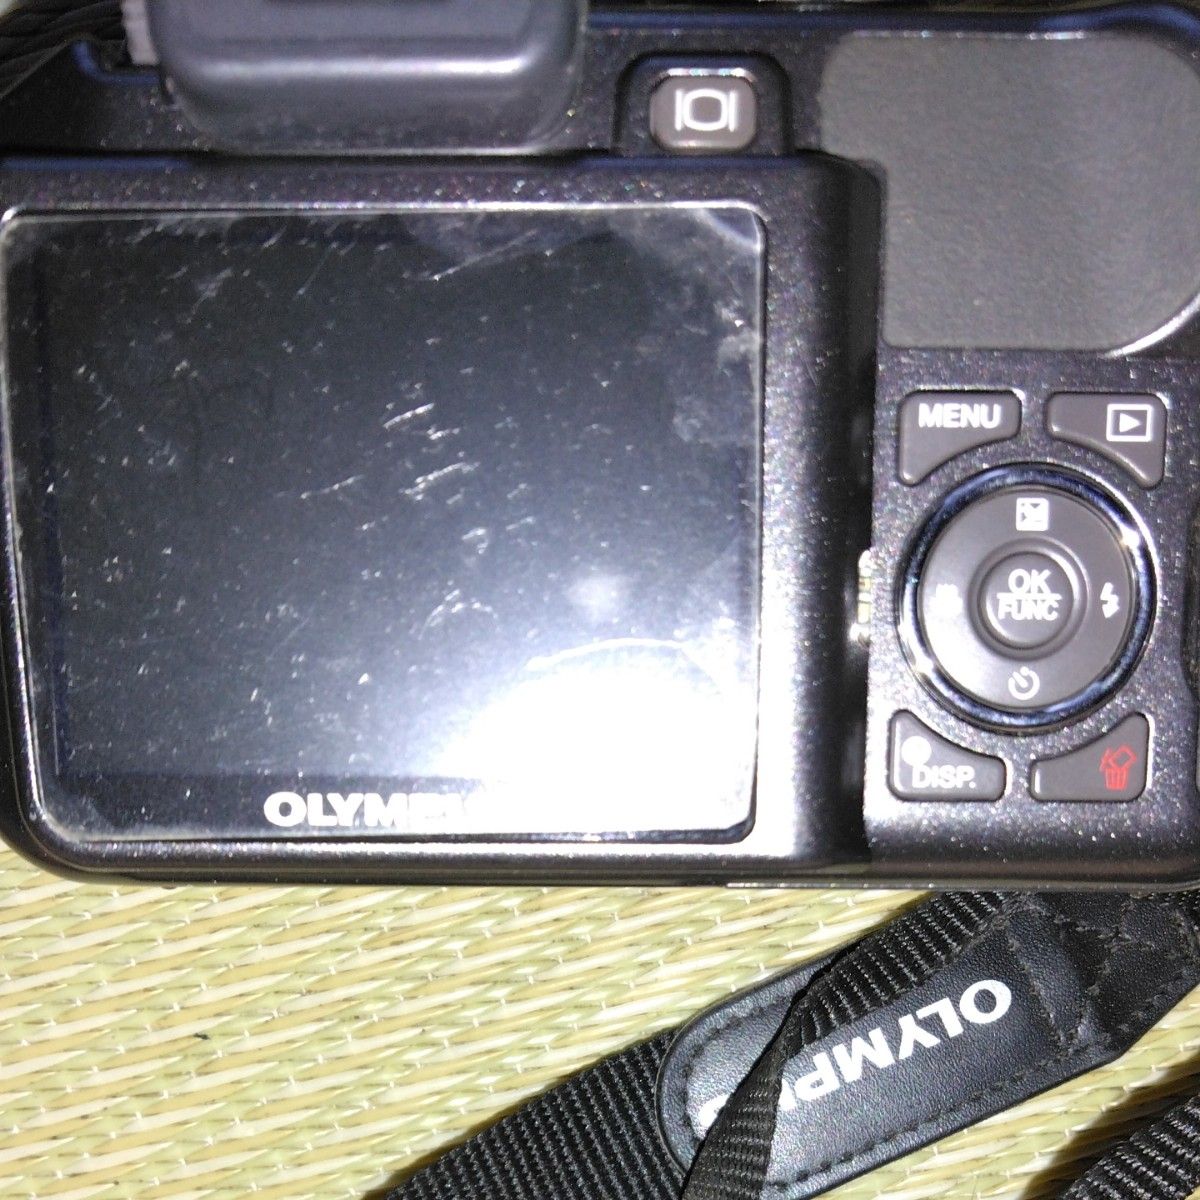 OLYMPUSデジタルカメラSP-550UZ